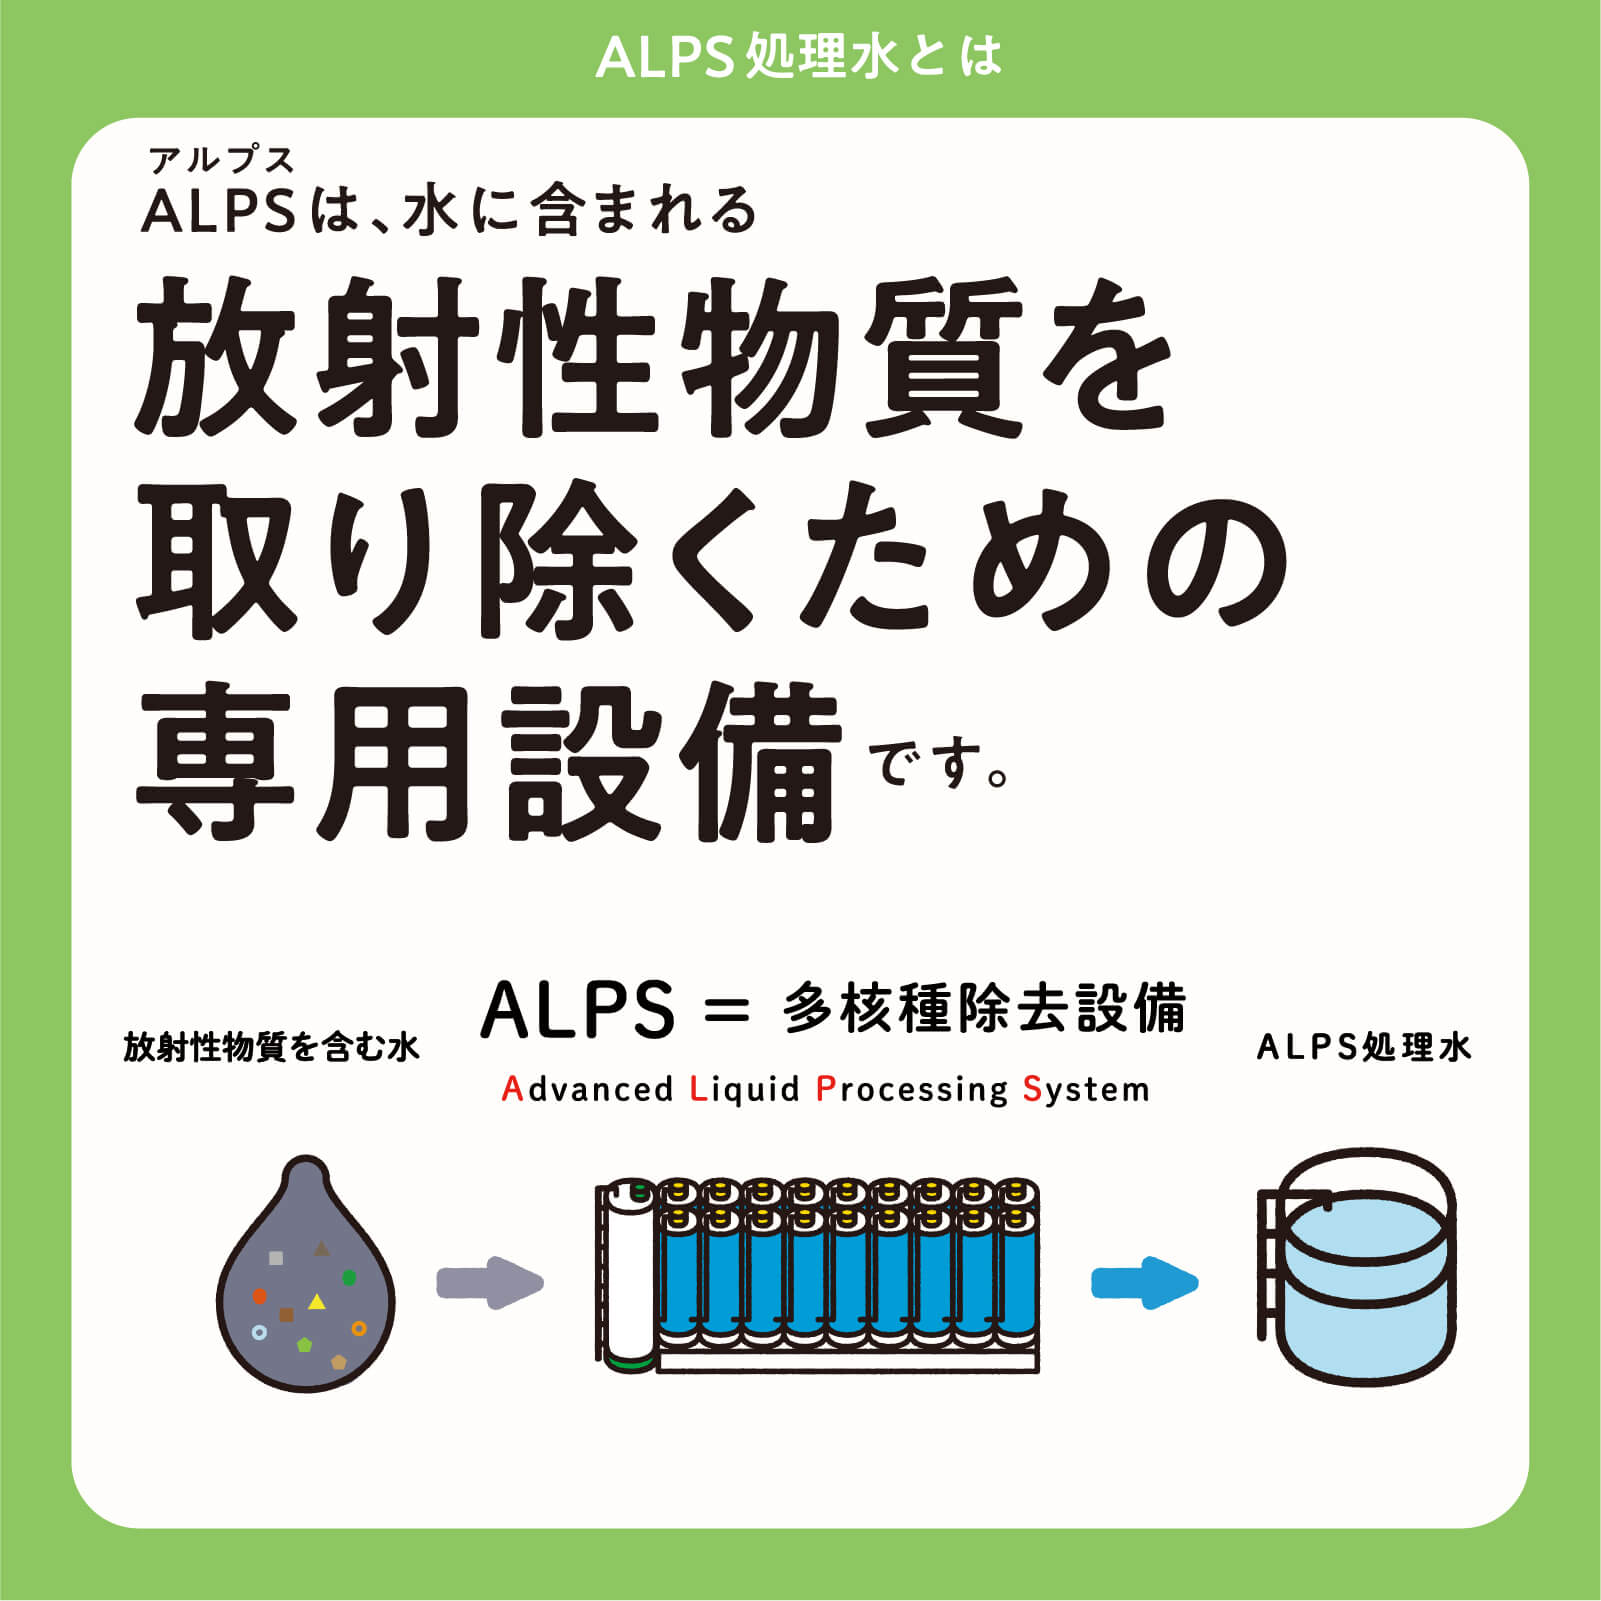 ALPSは、水に含まれる放射性物質を取り除くための専用設備です。